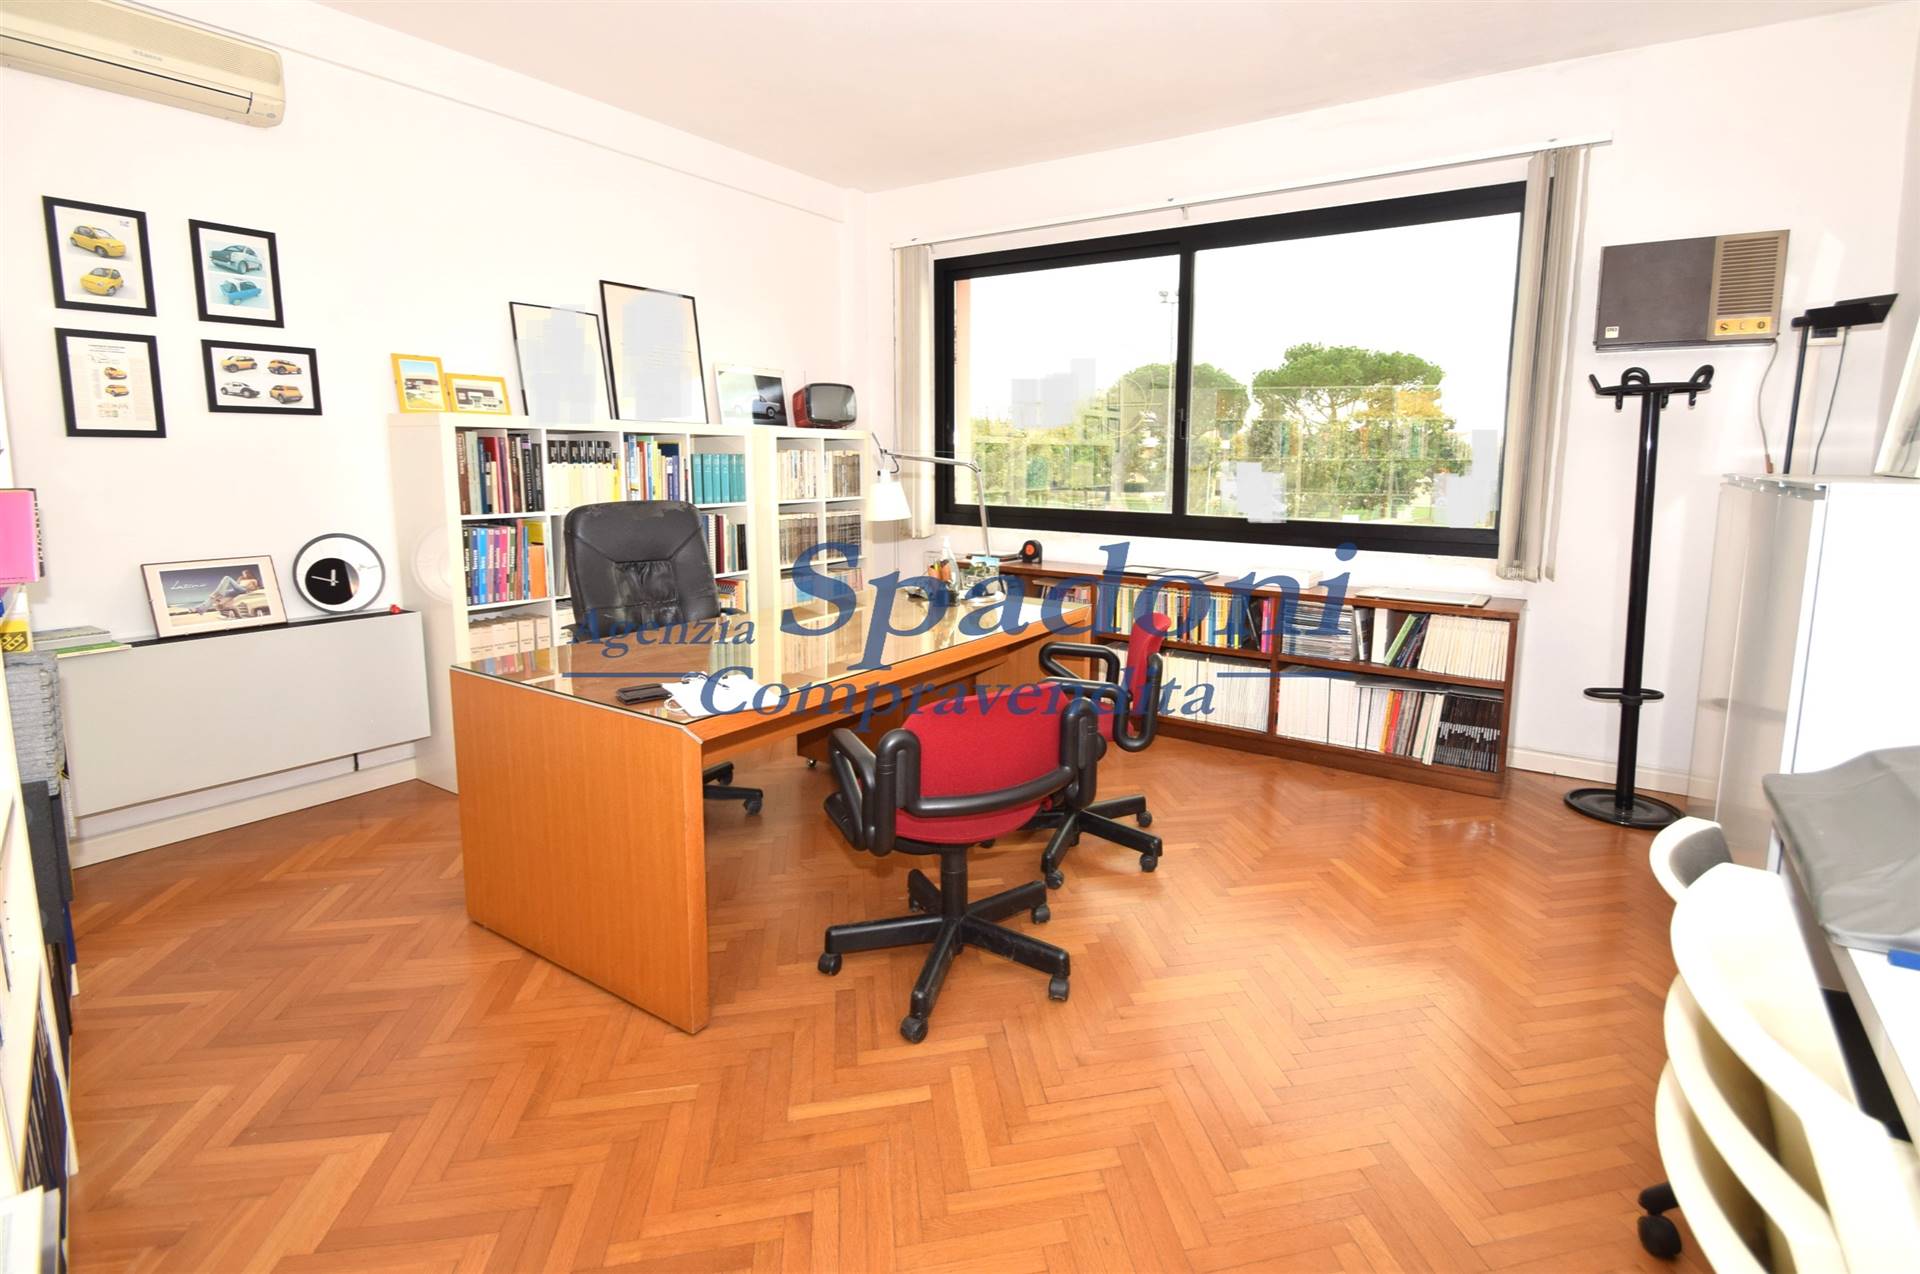 Ufficio / Studio in vendita a Massa e Cozzile, 3 locali, zona Zona: Traversagna, prezzo € 105.000 | CambioCasa.it